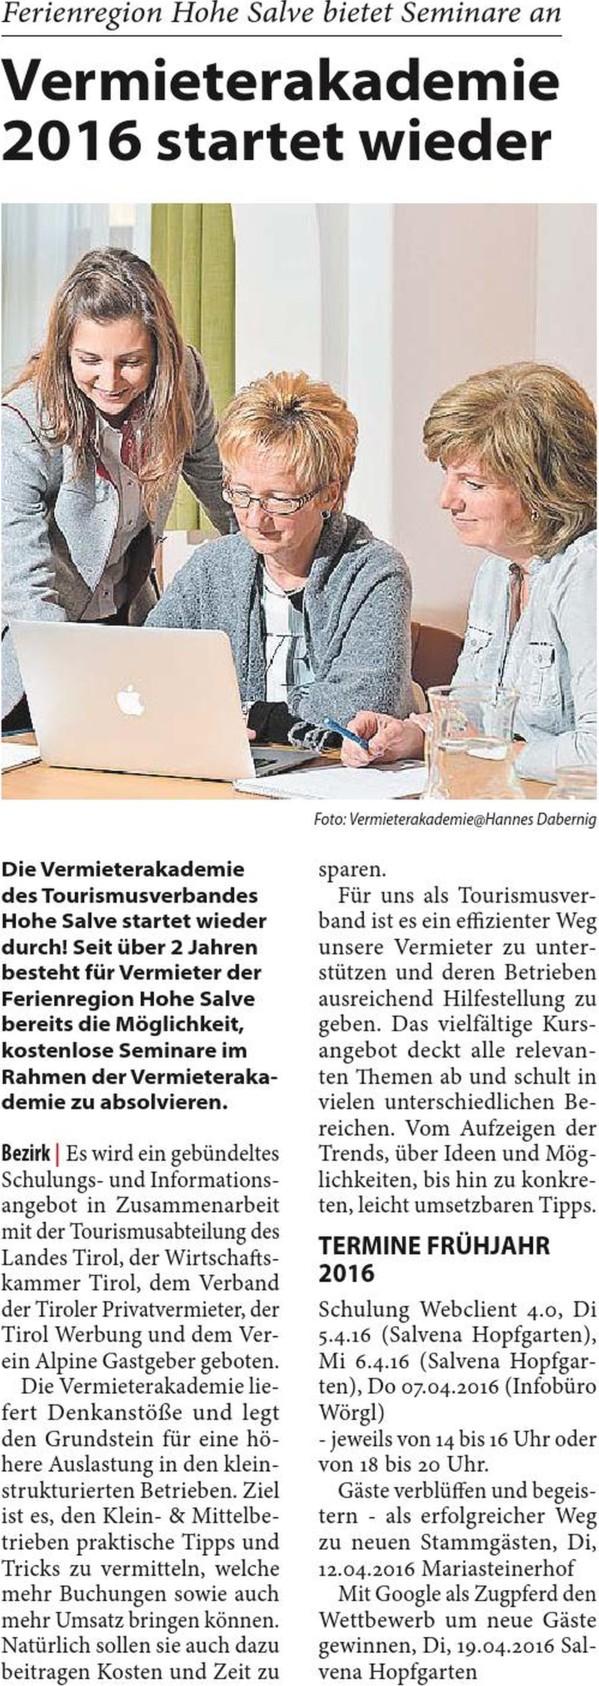 Kitzbüheler Anzeiger Seite 19 / 24.03.